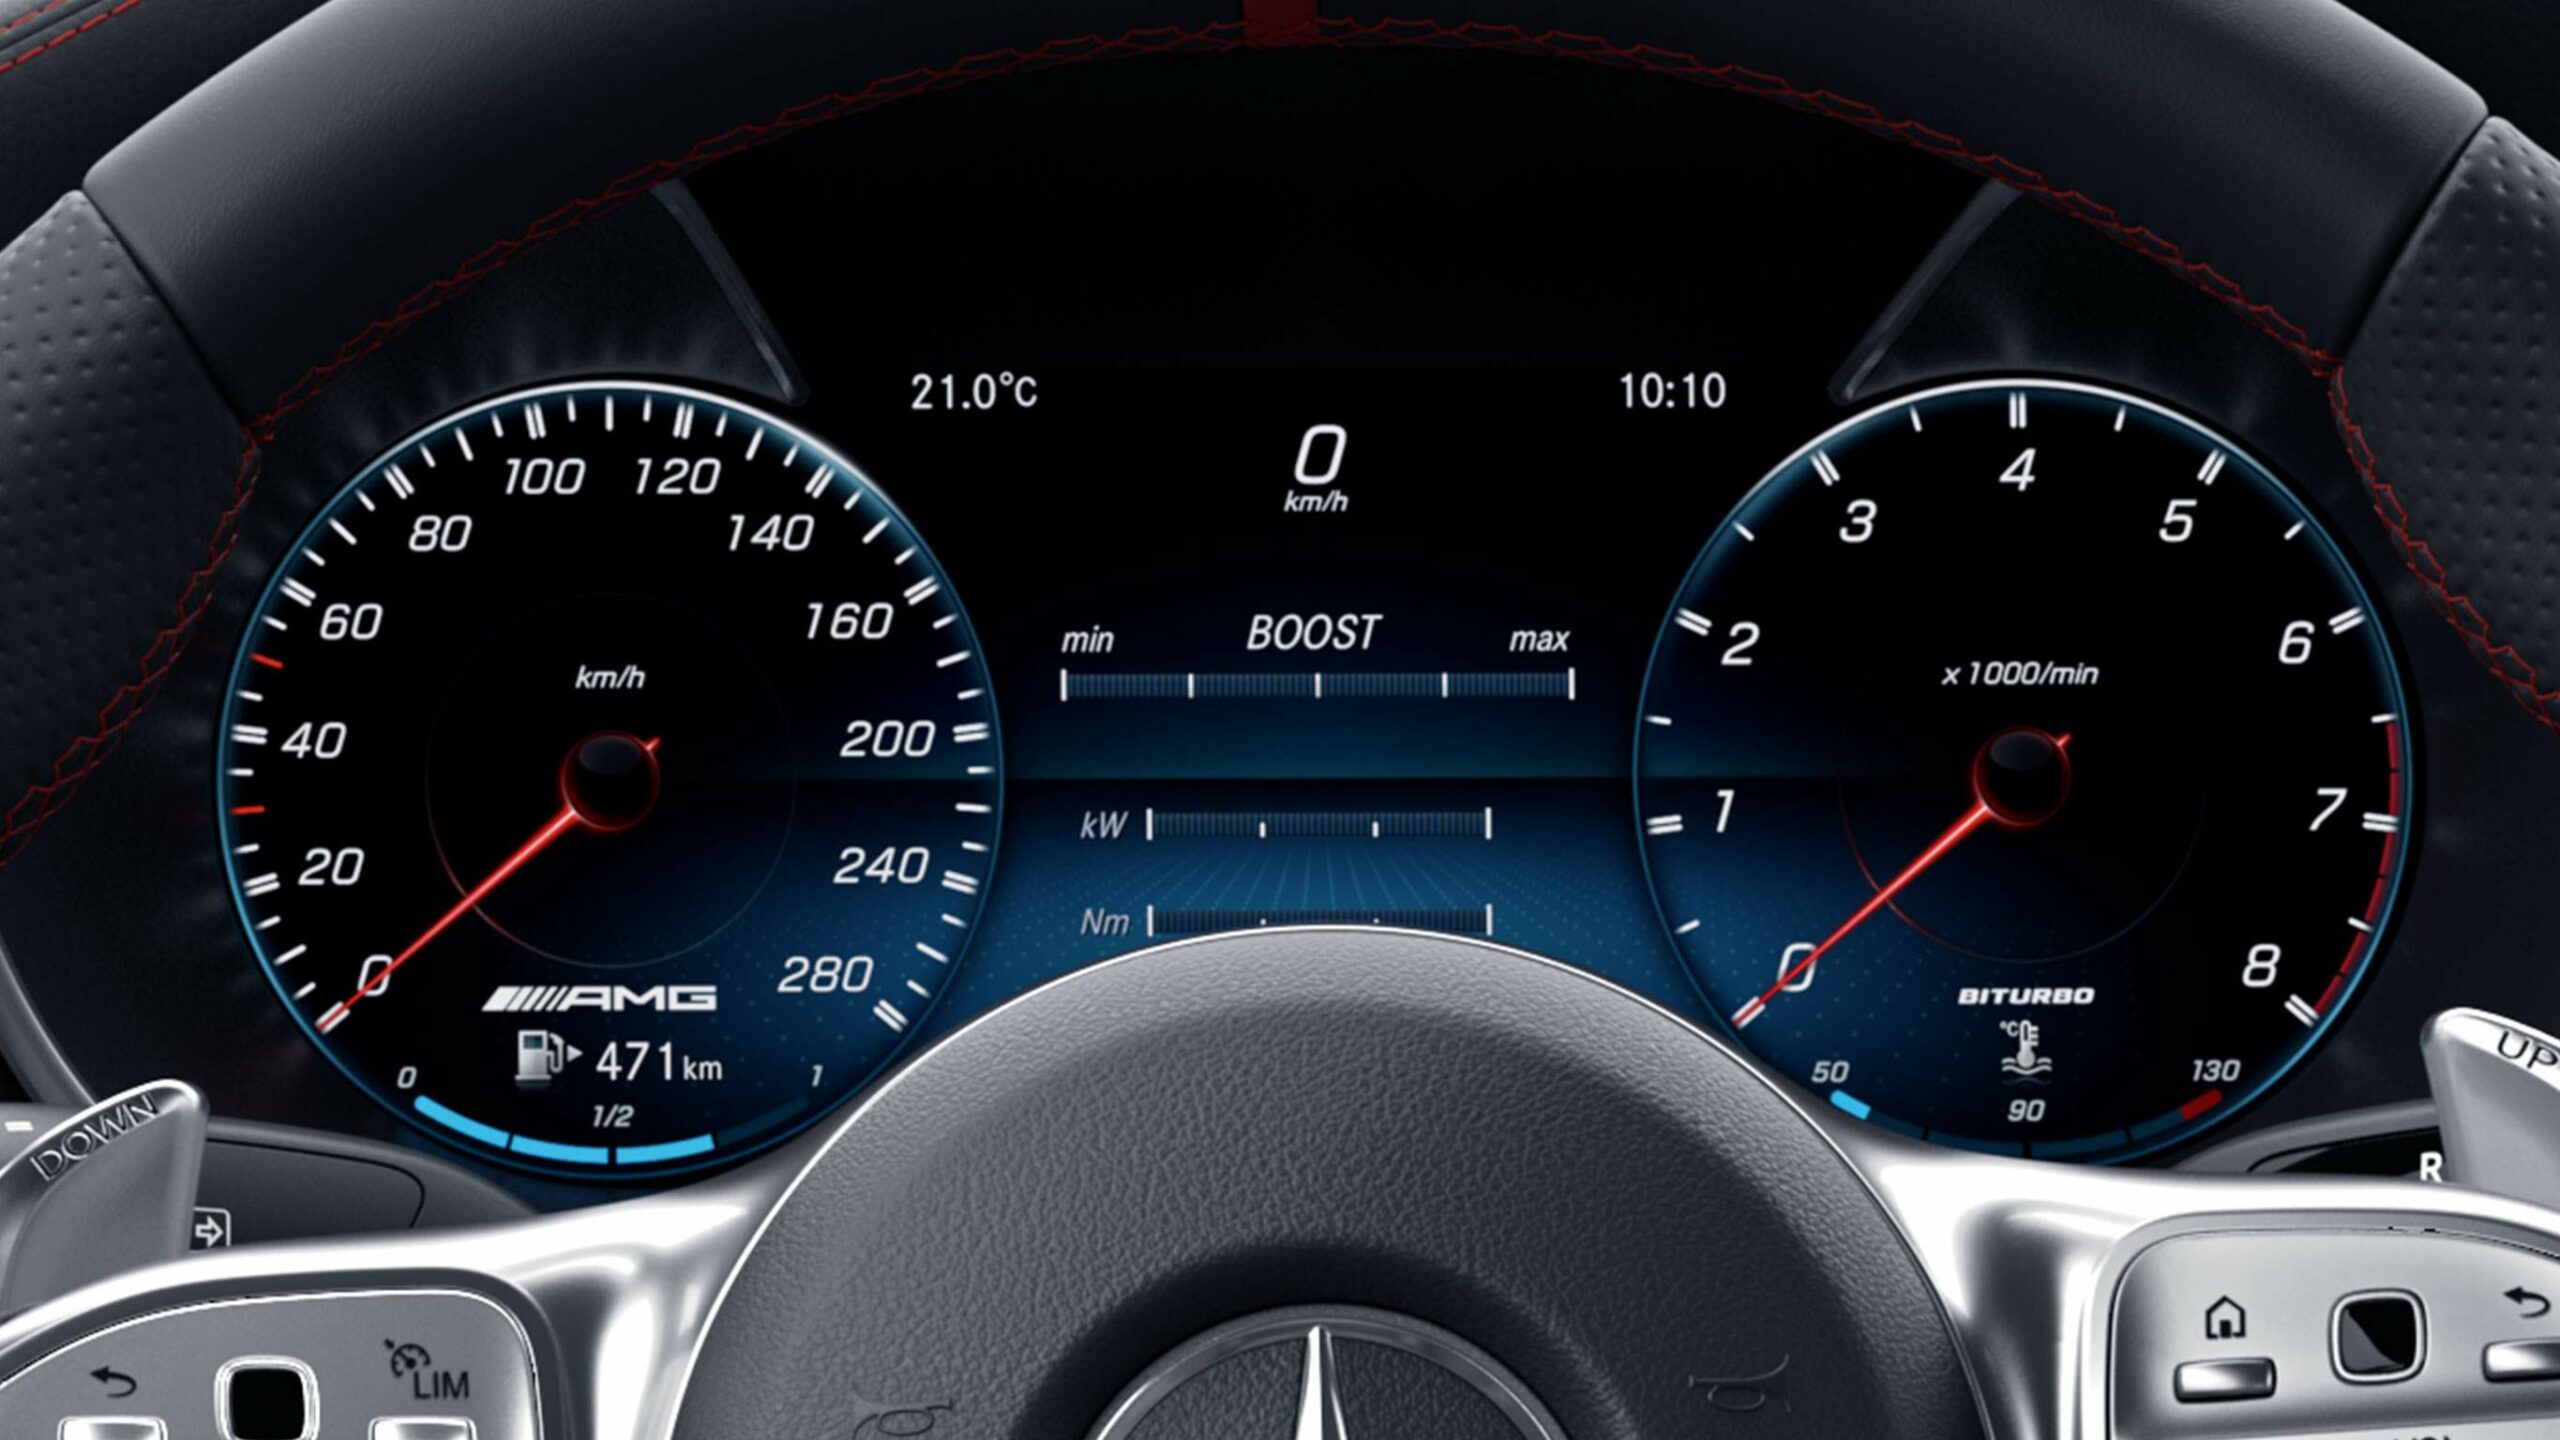 Tablero digital de la innovadora Clase C Cabriolet AMG de Mercedes-Benz